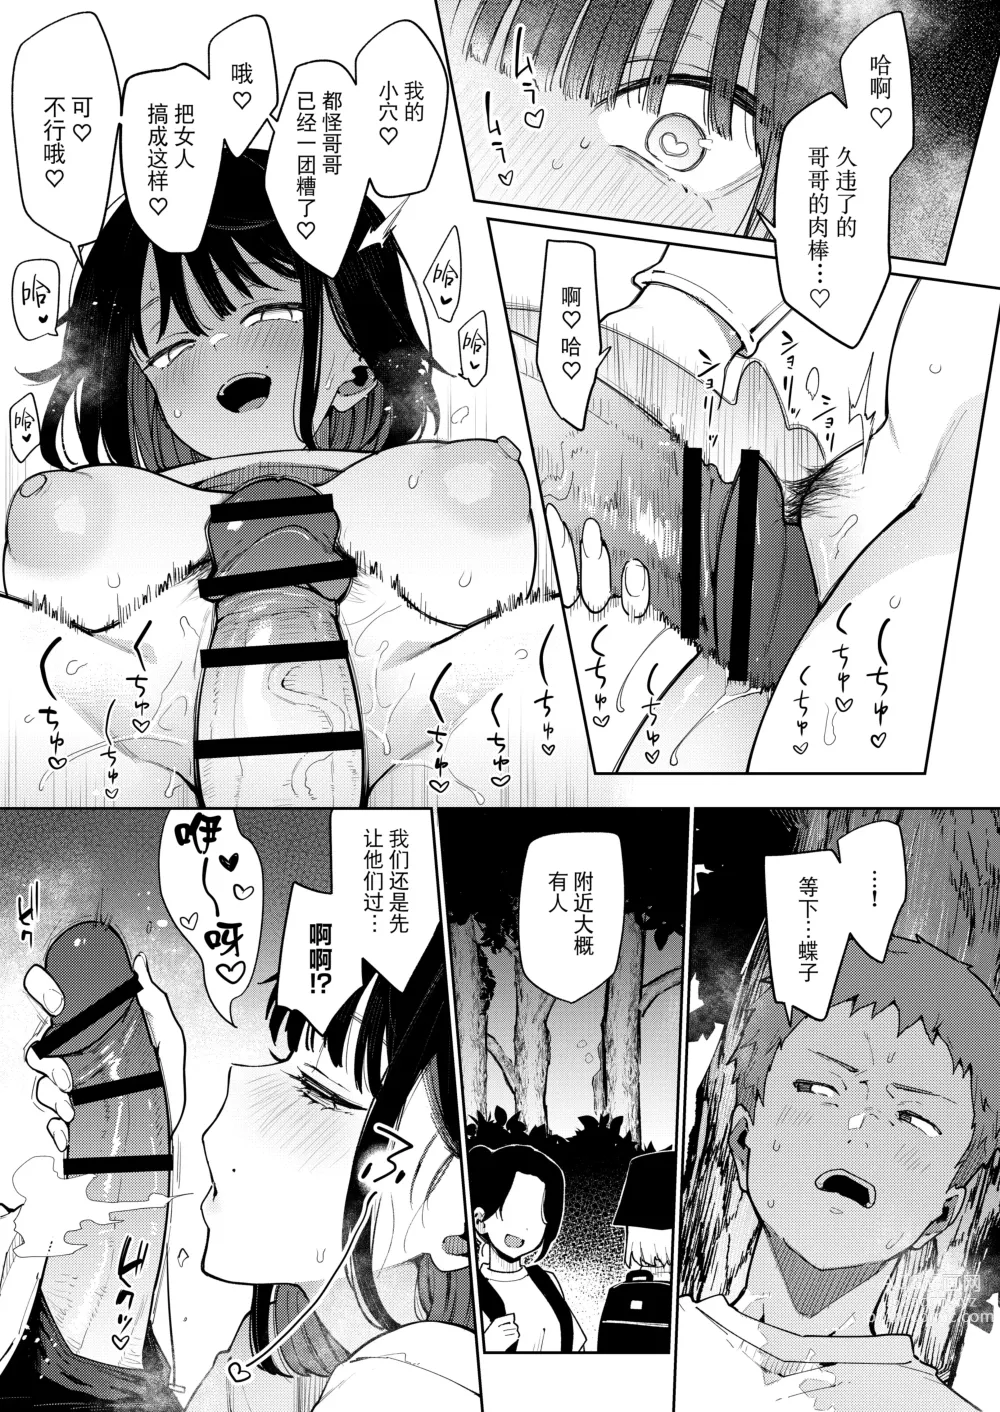 Page 159 of doujinshi Chouko I-V